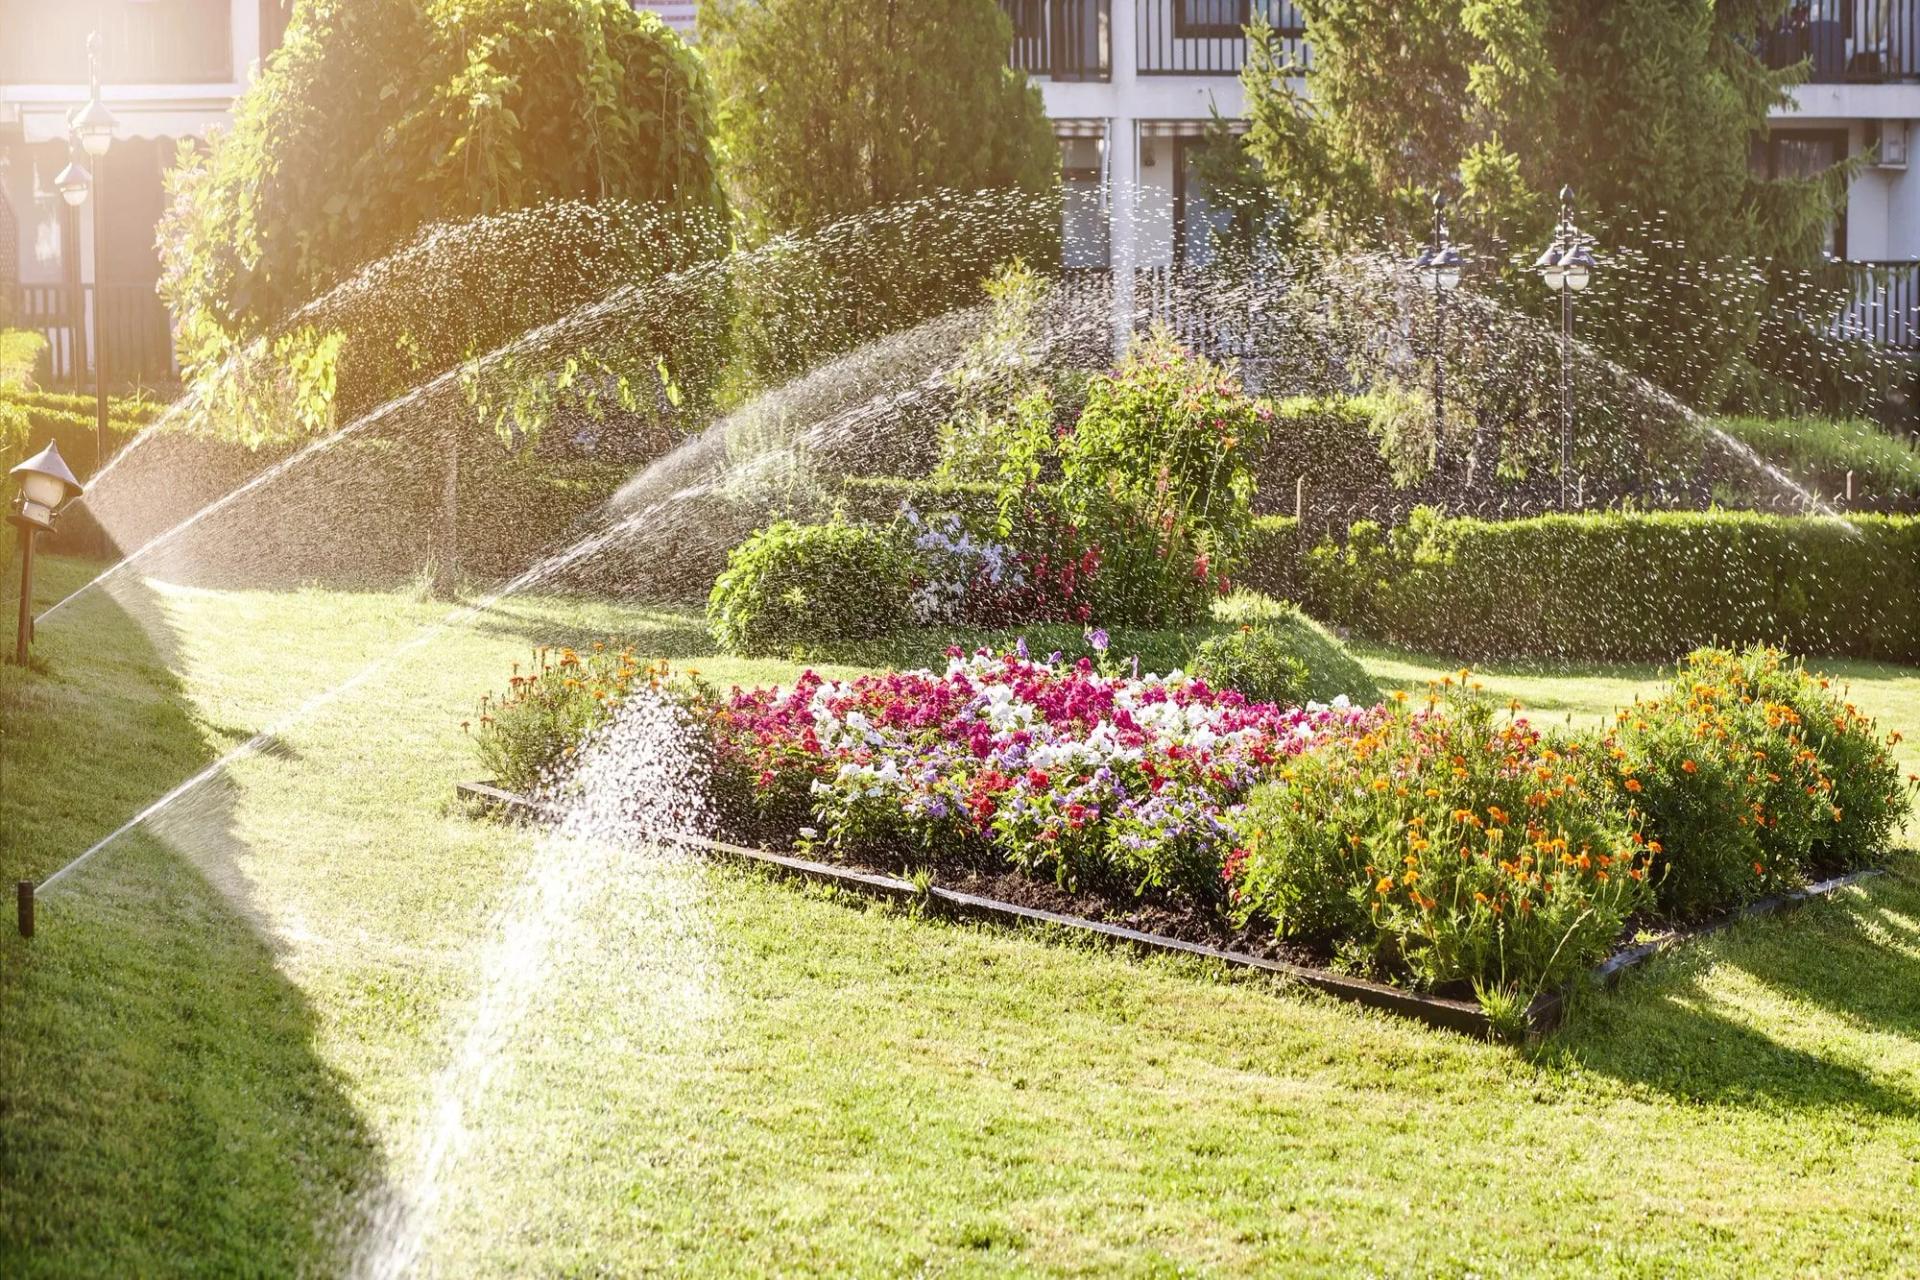 Sprinklers Watering Flowers and Lawn